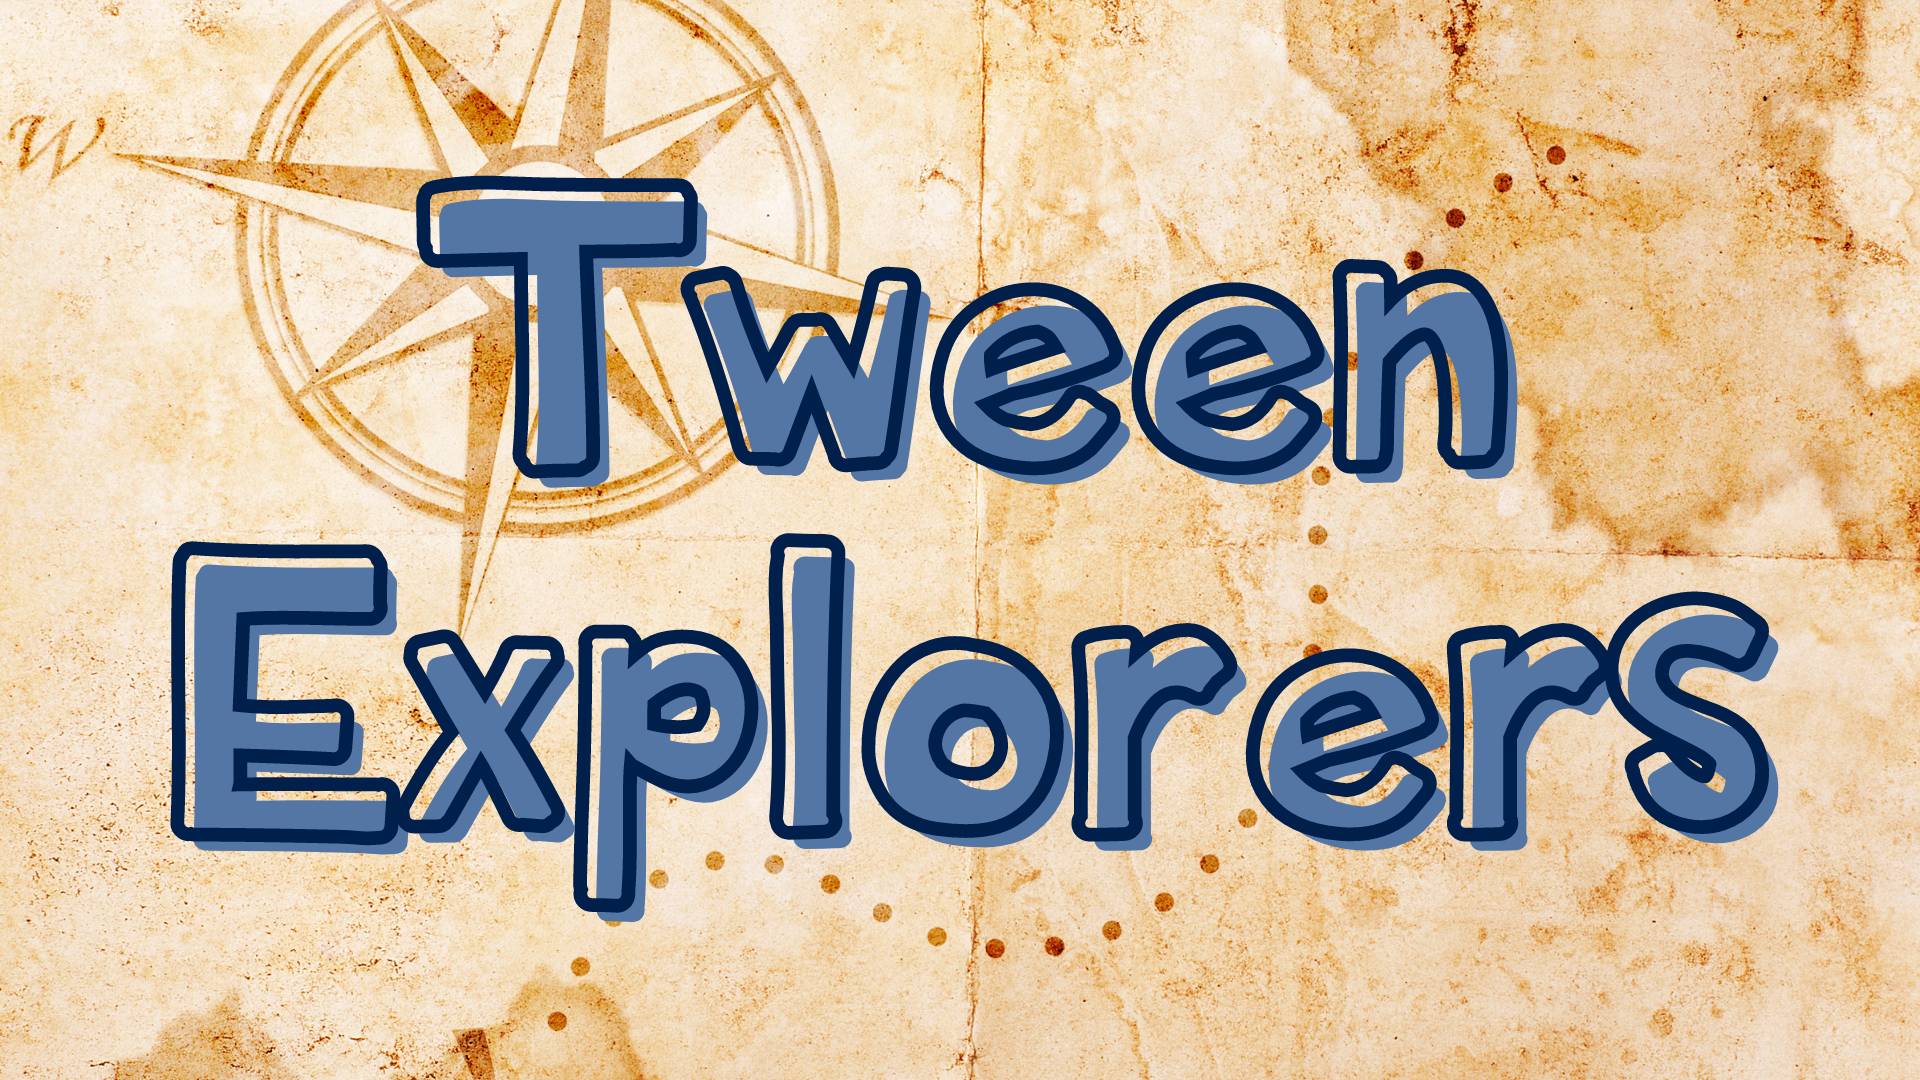 Tween Explorers